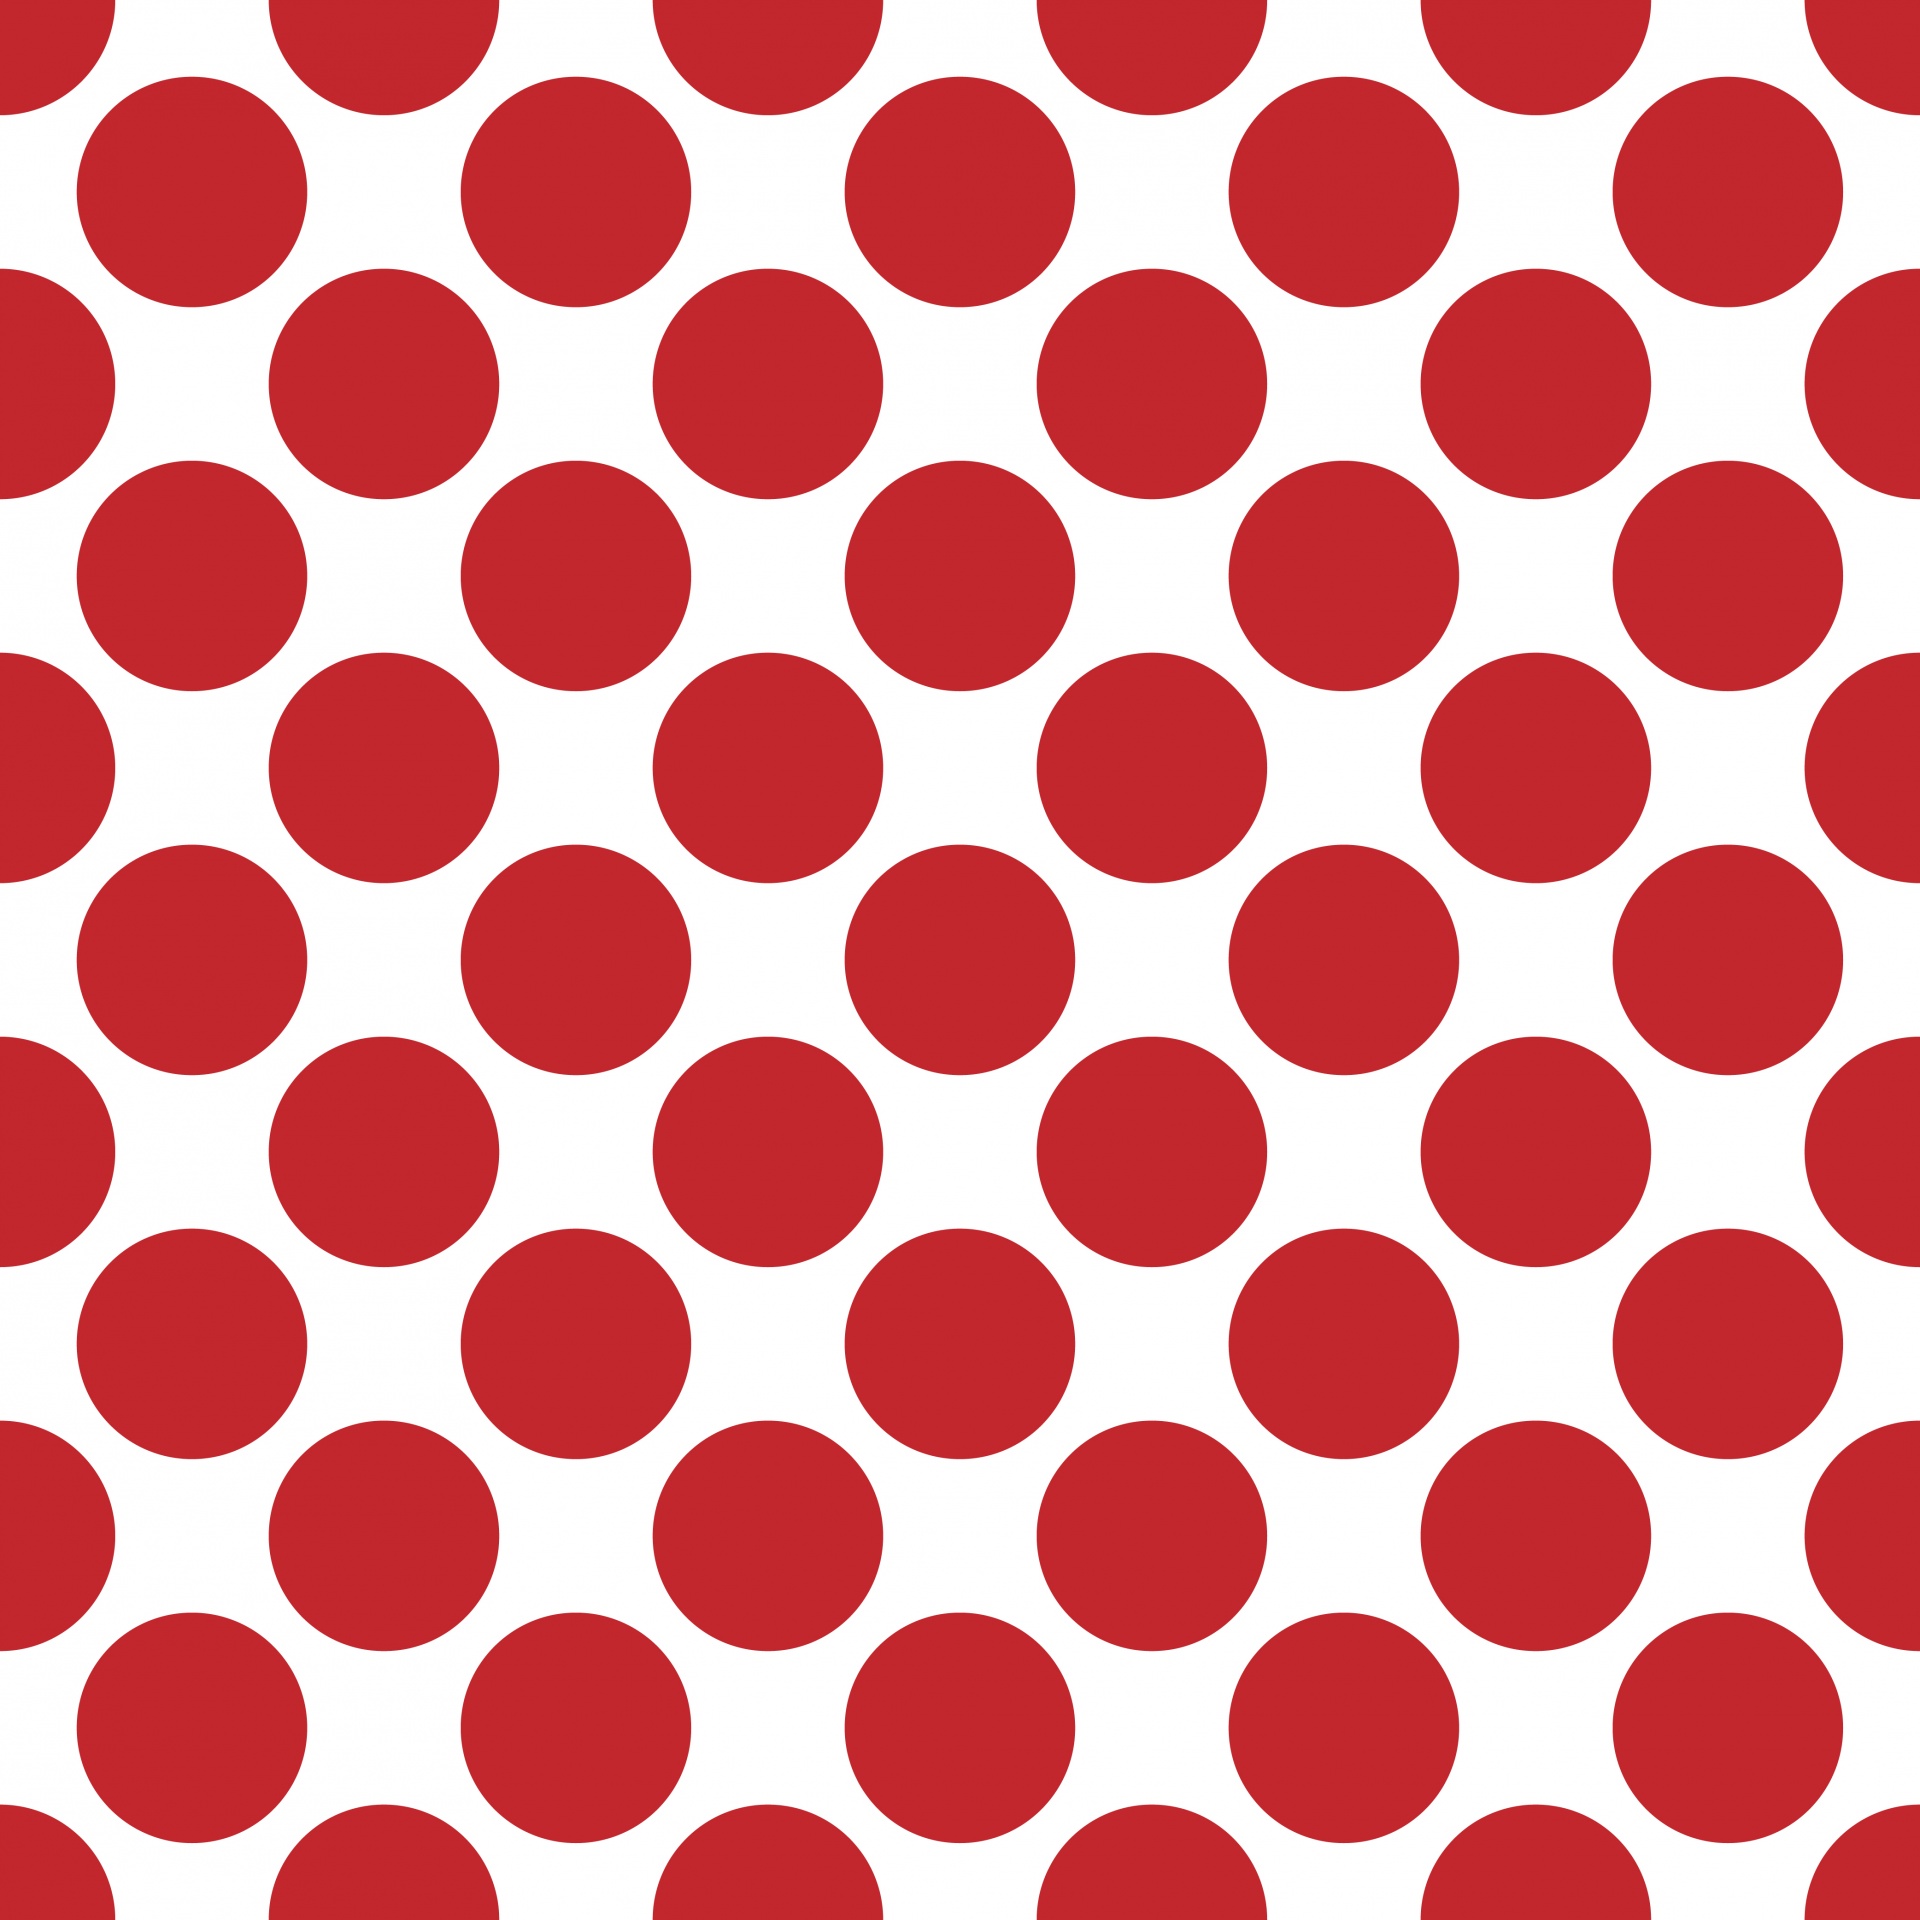 Polka Dots Red Wallpaper